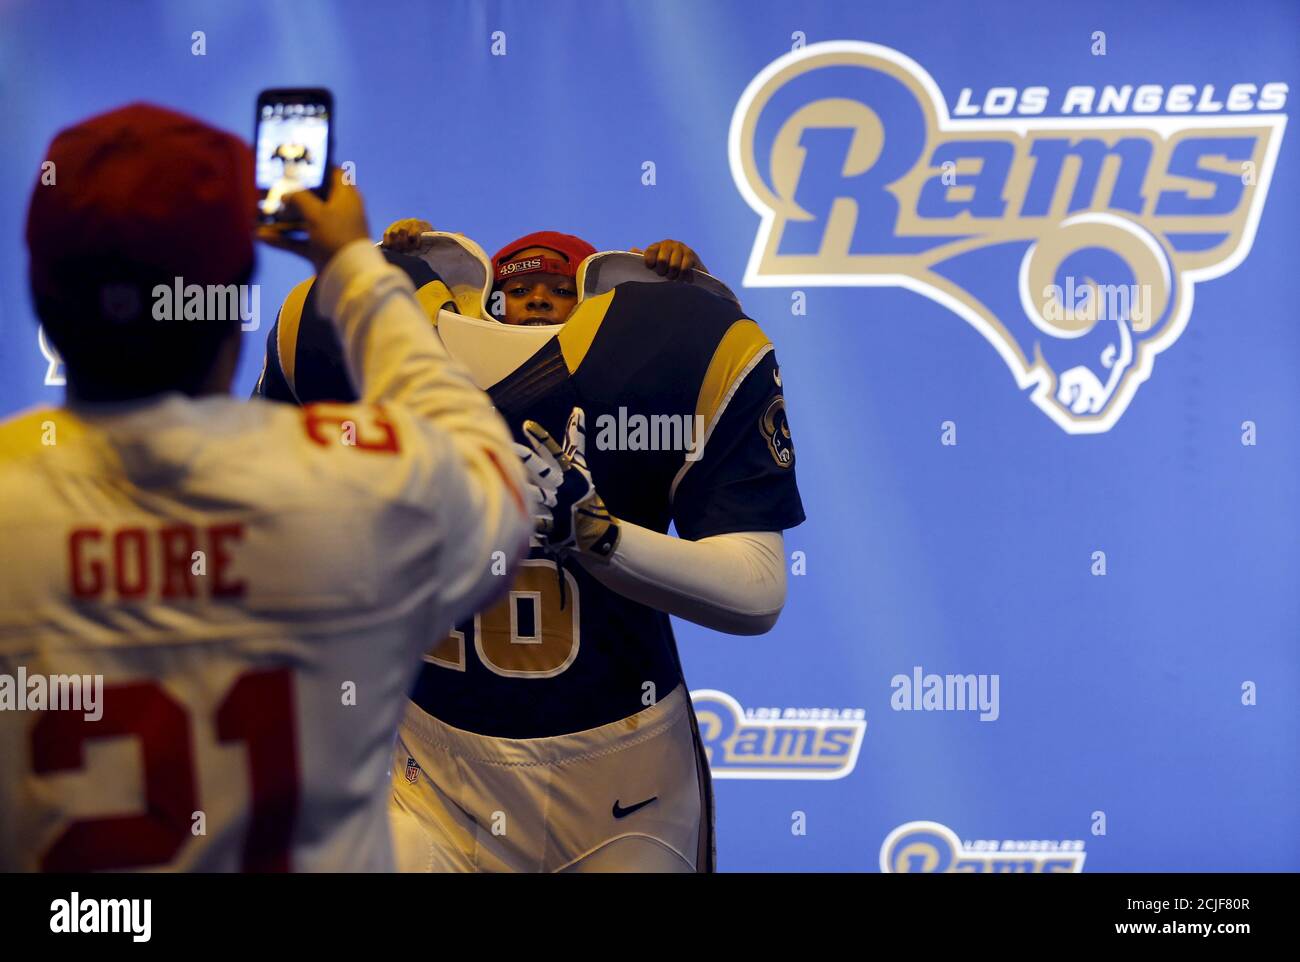 Sterling, cinq ans, pose avec un mannequin Los Angeles Rams alors que son père prend une photo lors d'une visite à l'expérience NFL , une attraction Super Bowl 50 à San Francisco, Californie, le 5 février 2016. REUTERS/Mike Blake Banque D'Images